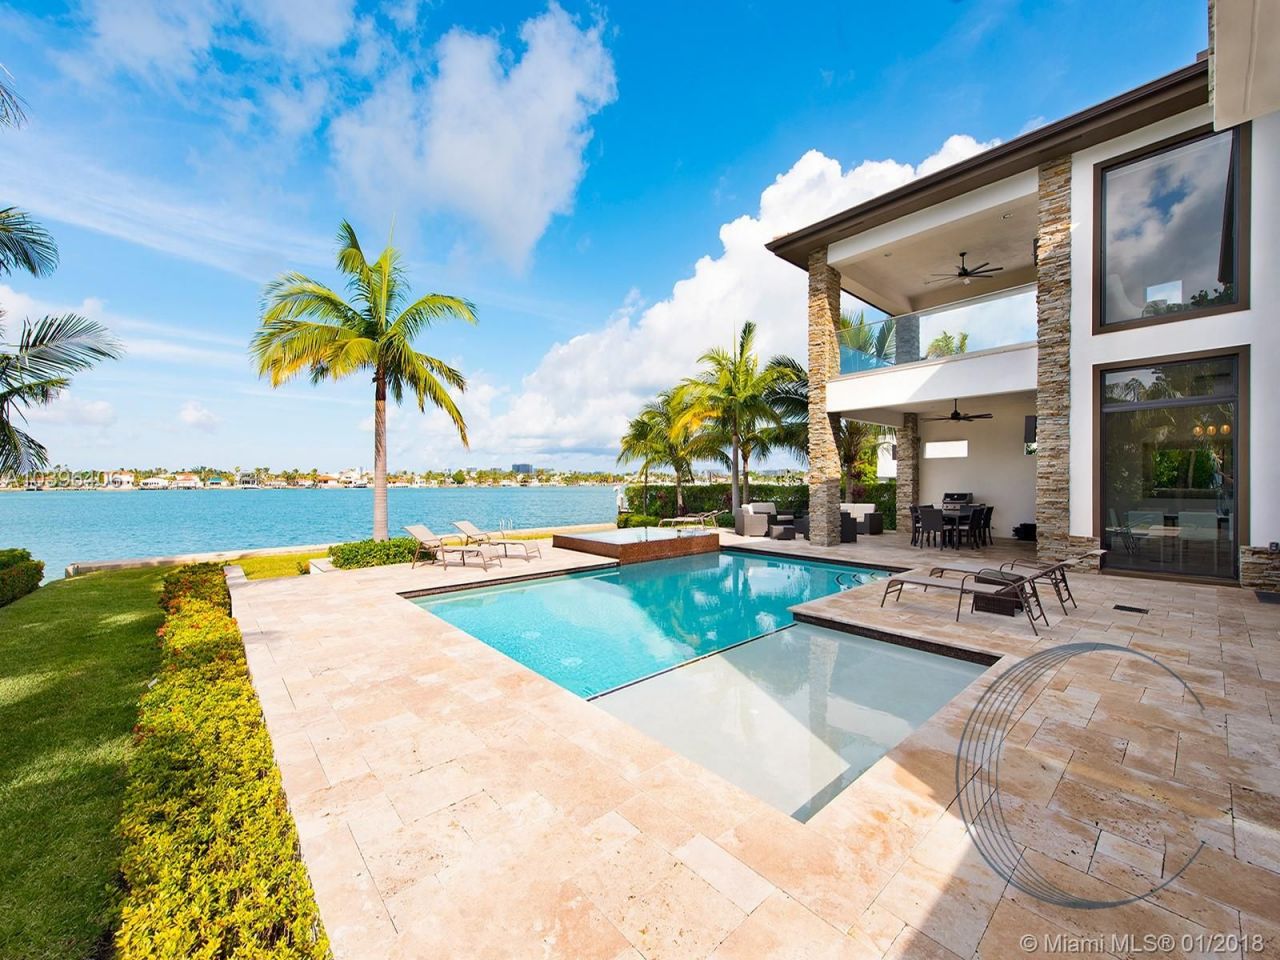 Villa in Miami, USA, 400 m2 - Foto 1